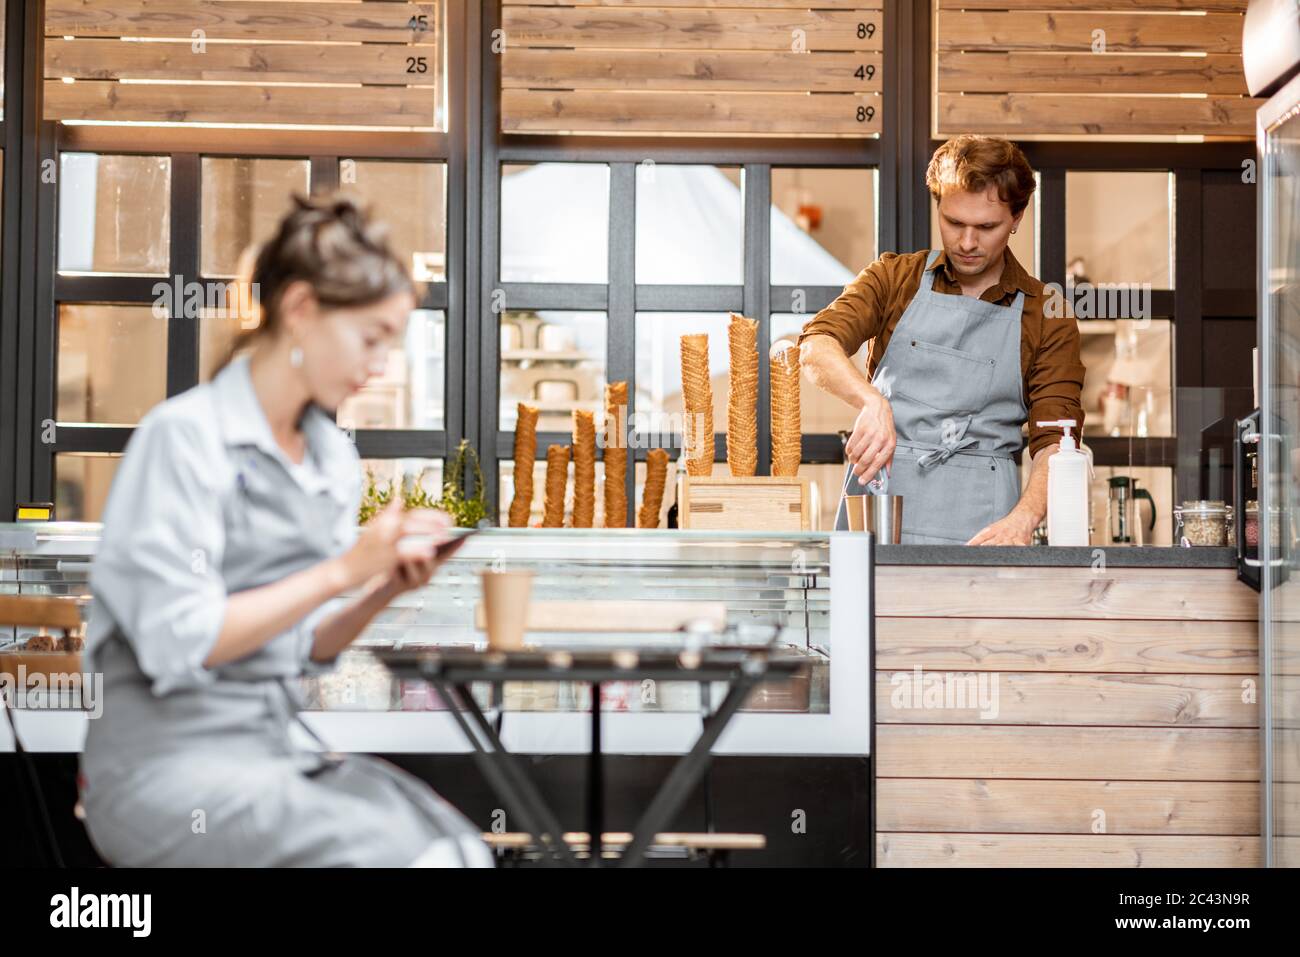 Das Personal im Café oder in der Konditorei, der Kellner am Telefon und der Verkäufer arbeiten am Ladentisch Stockfoto